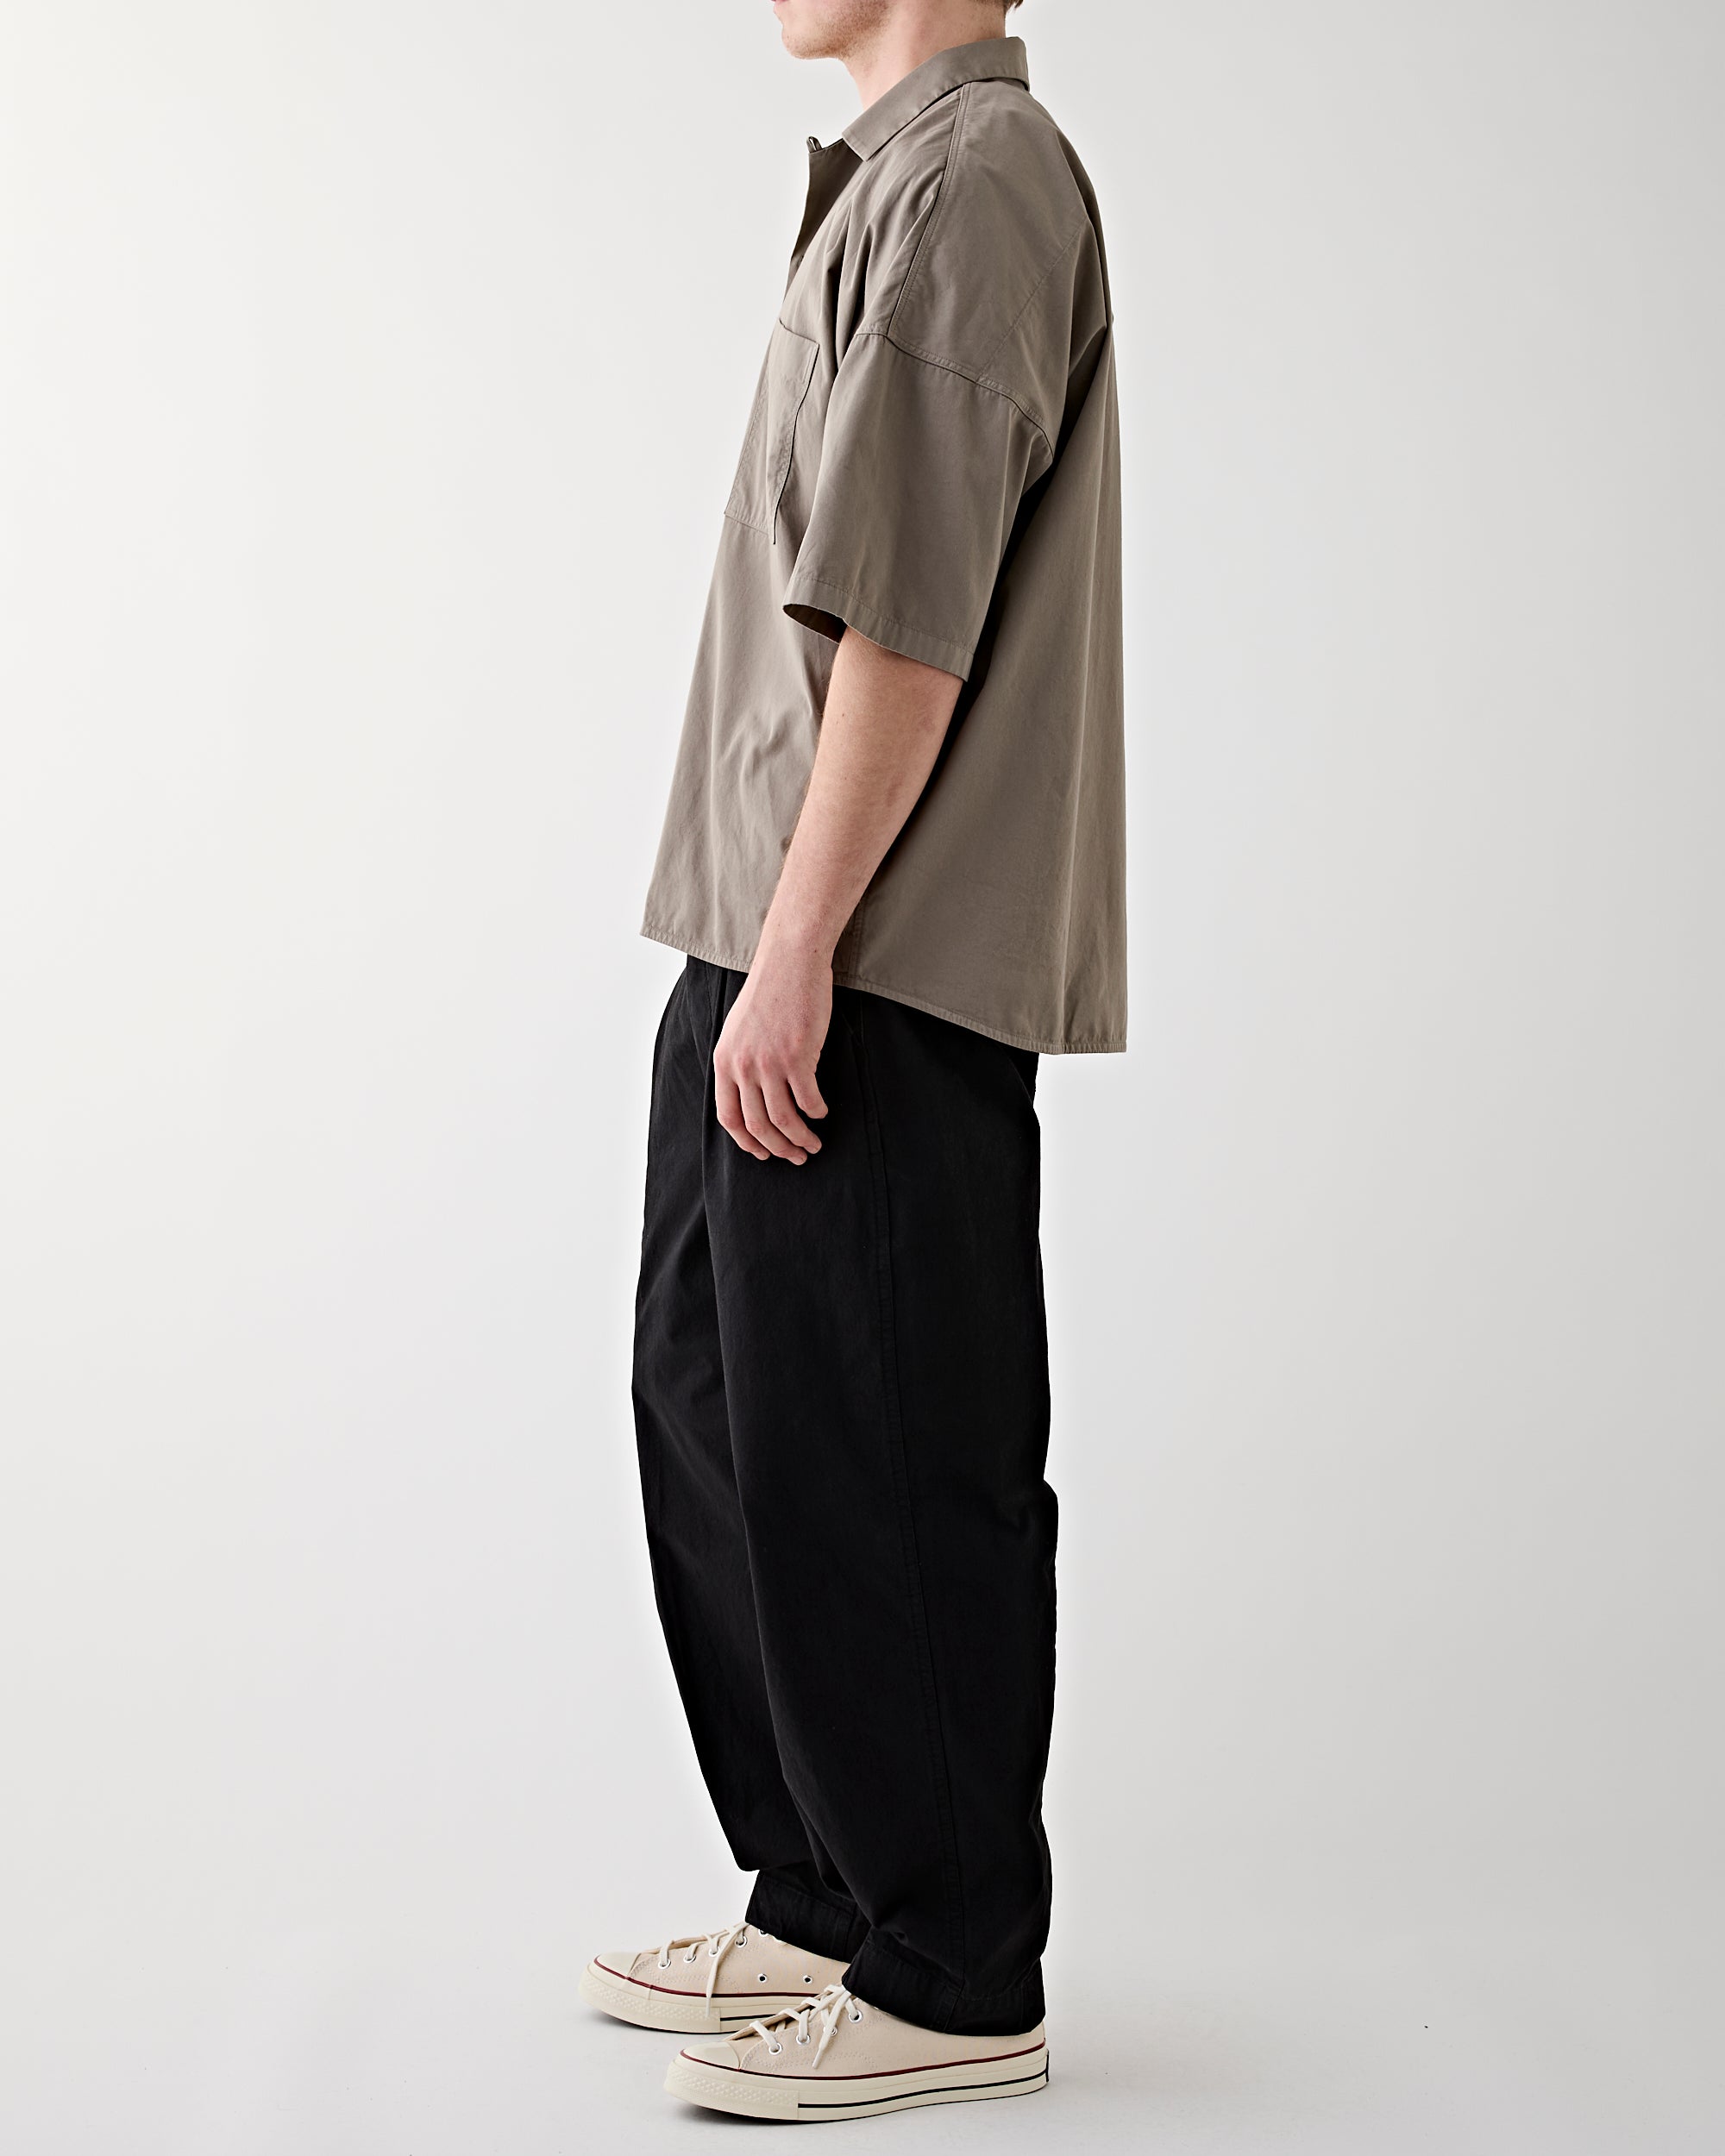 Applied Art Forms PM1-2 Short Sleeve Shirt Light Charcoal Shirt S/S Men